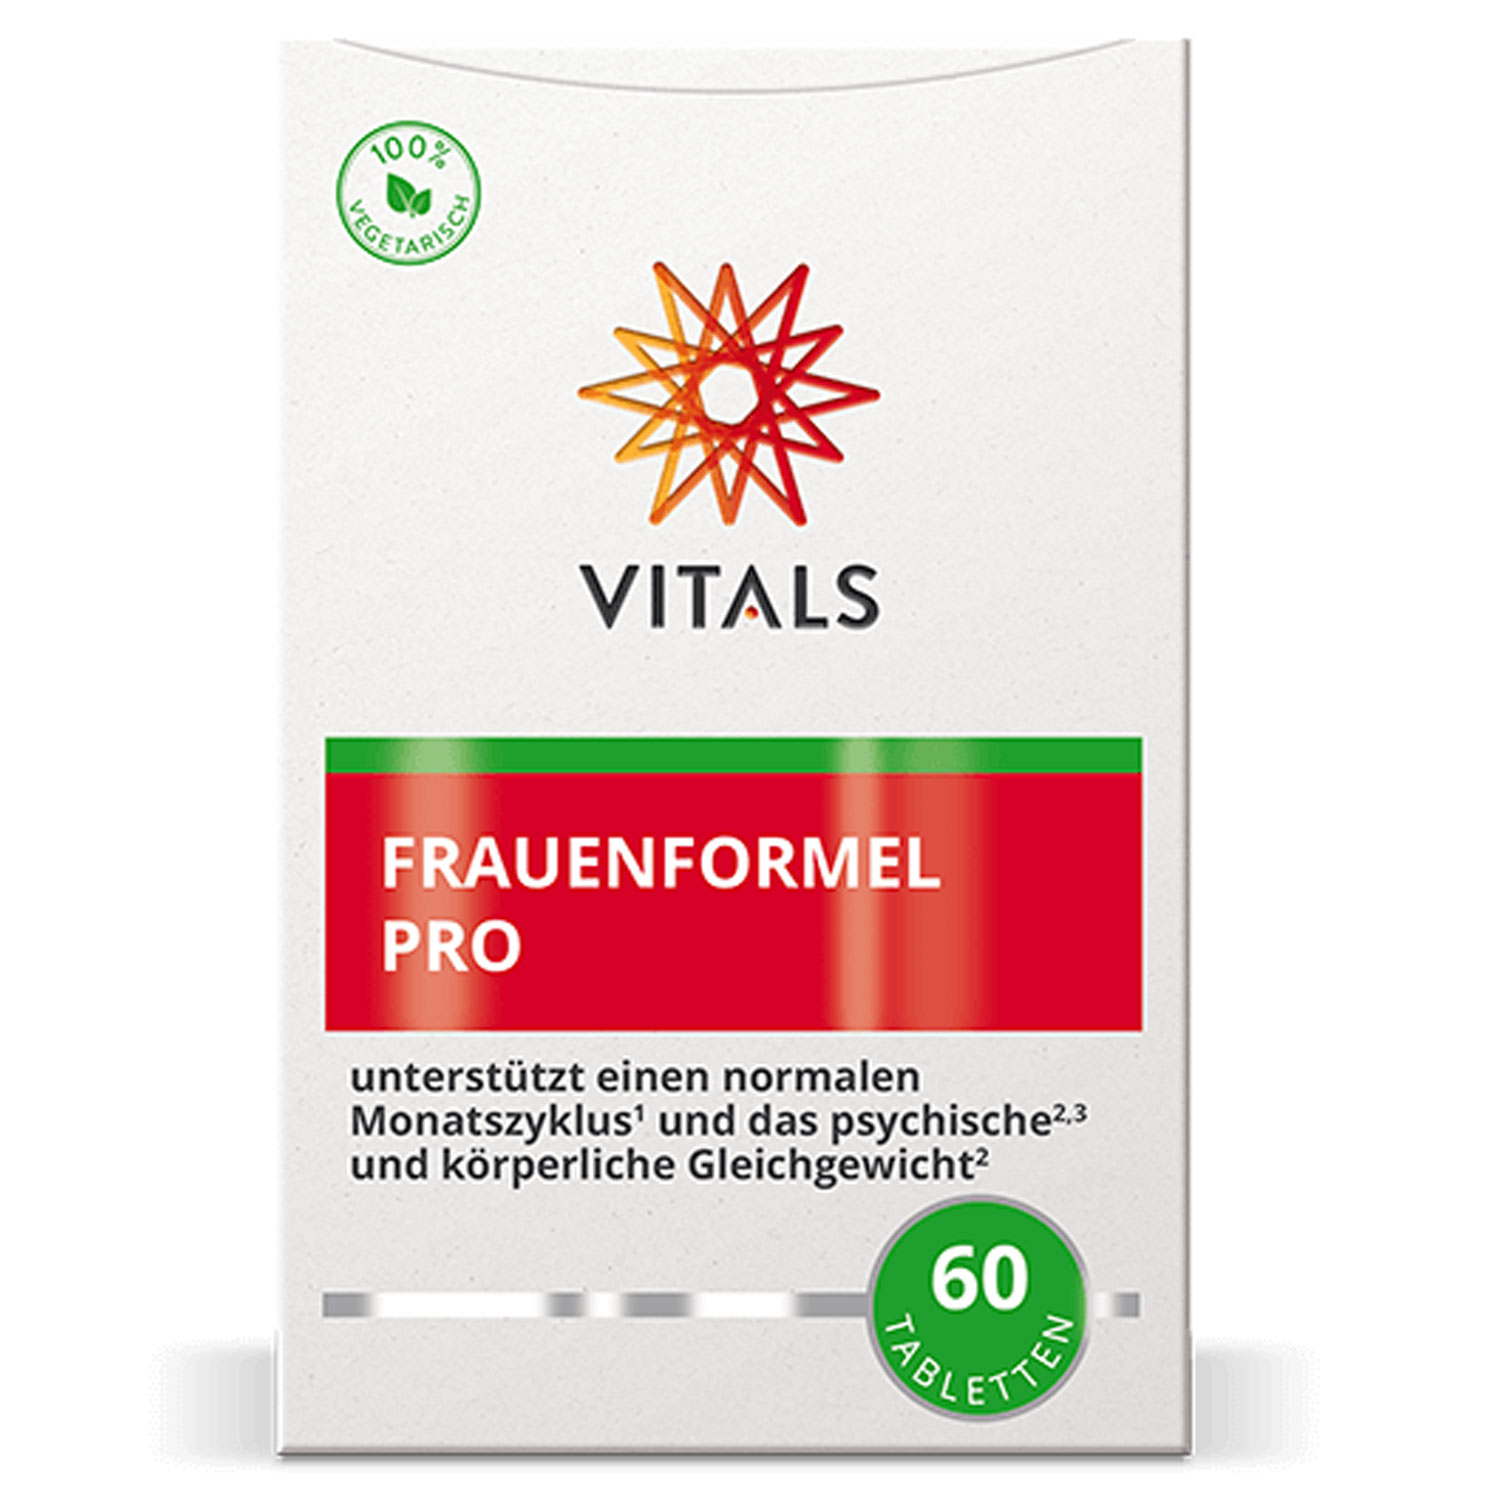 Frauenformel Pro von Vitals - 60 Kapseln - Verpackung